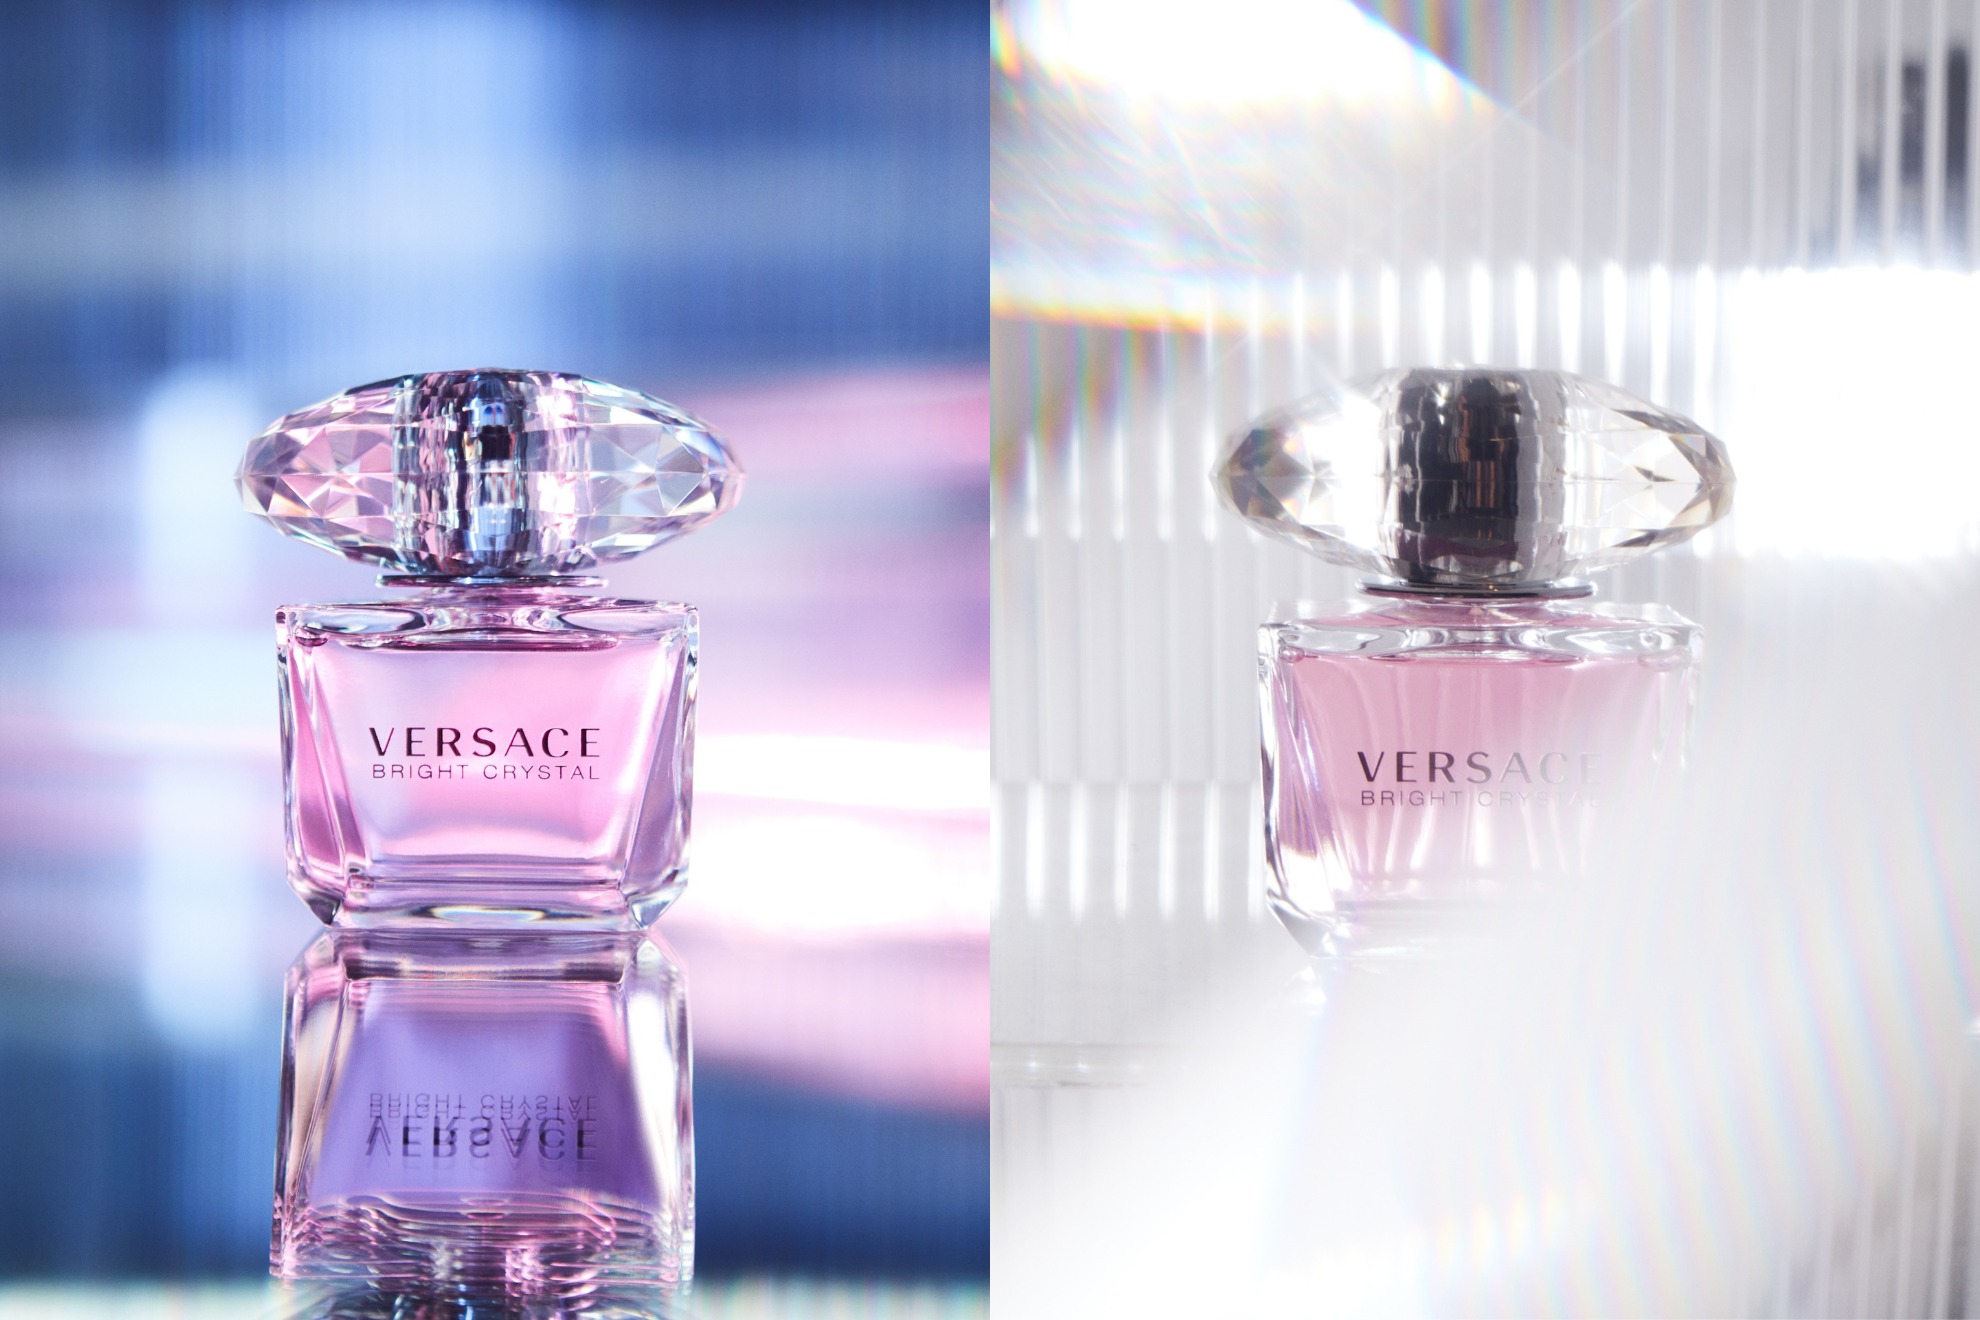 Versace Bright Crystal sở hữu thiết kế tựa viên pha lê hồng, phản chiếu ánh sáng huyền ảo